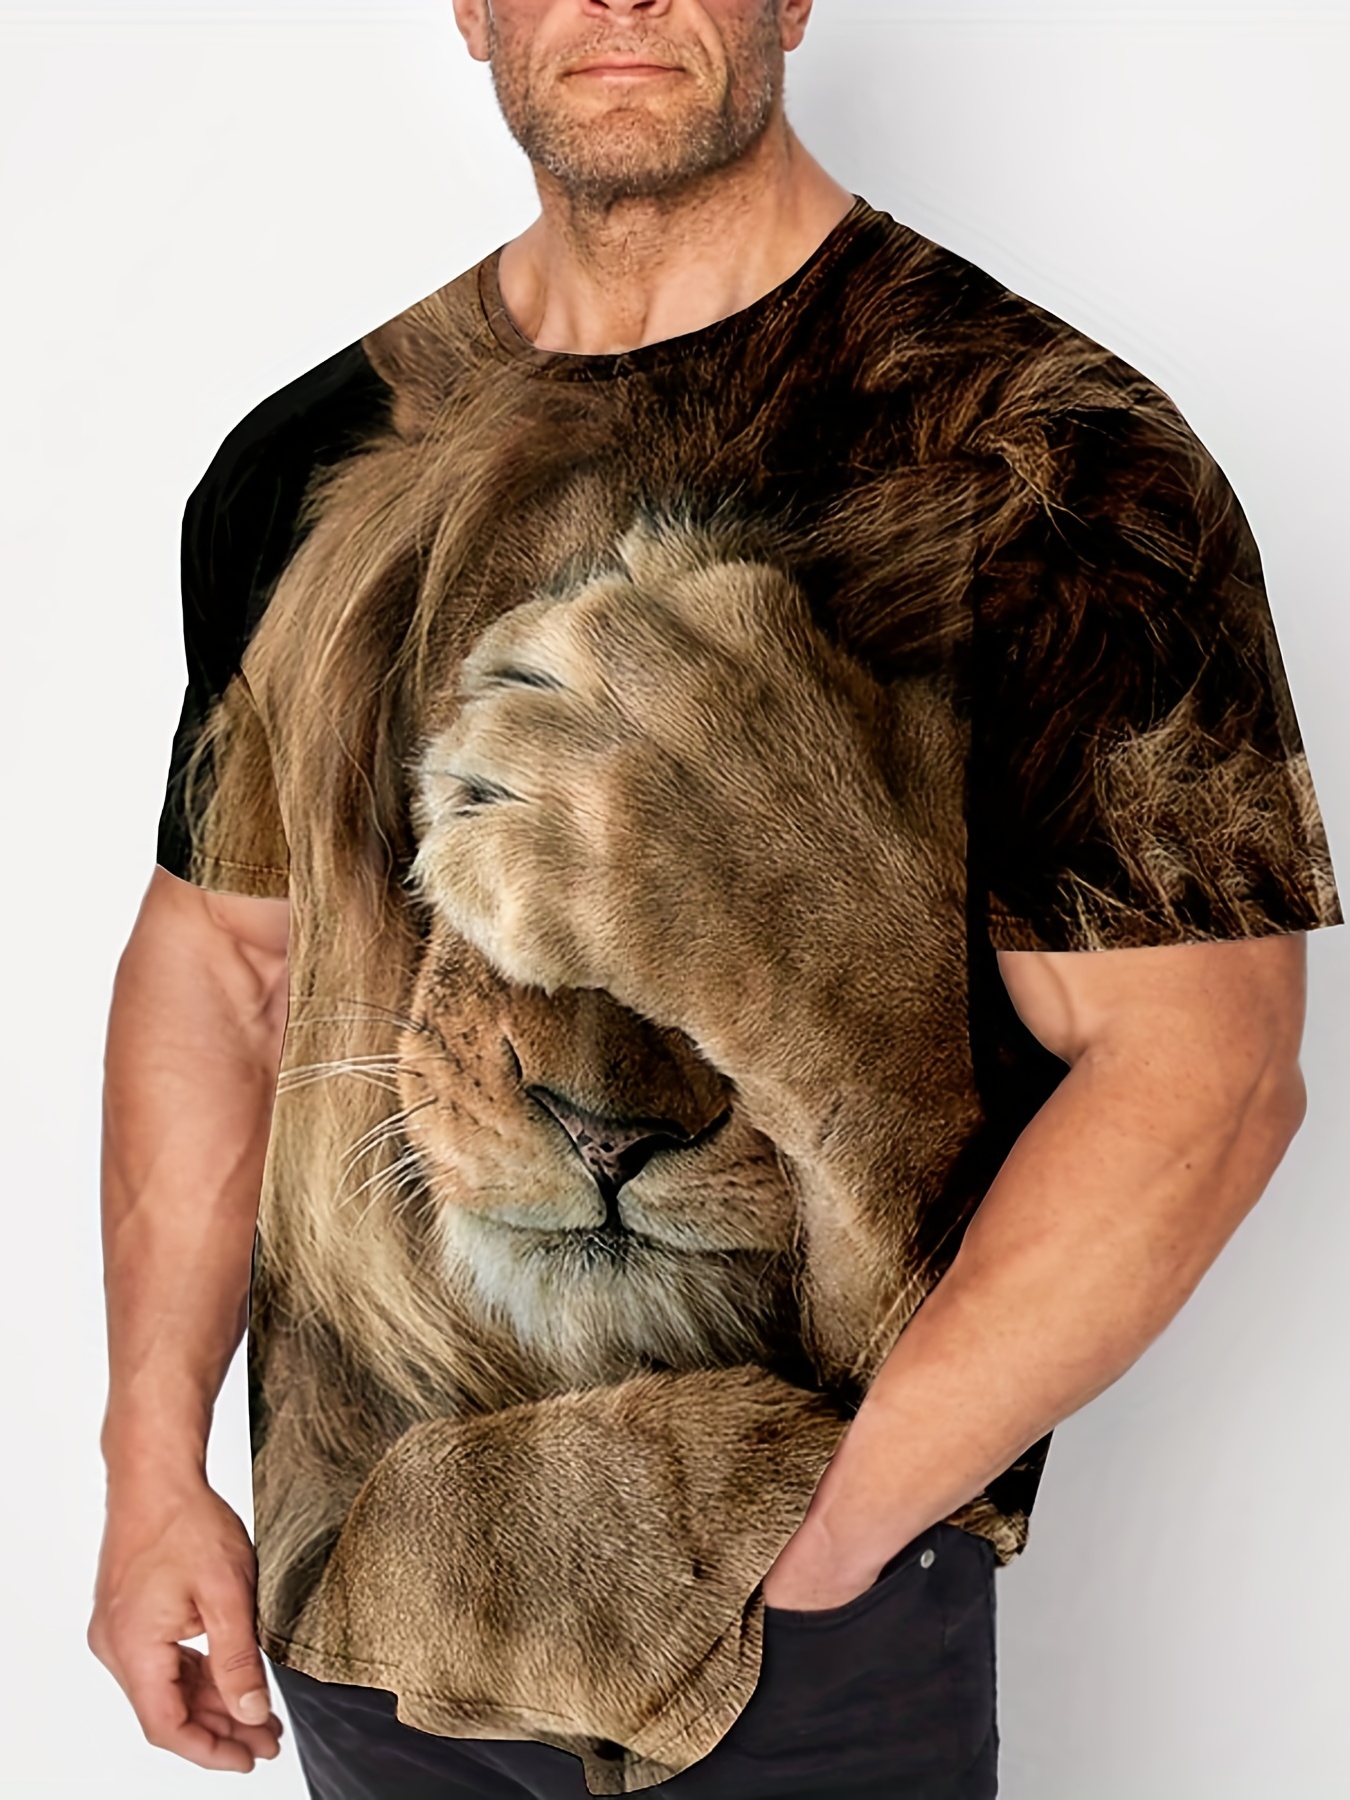 Plus Size Lion Graphic Tees For Men